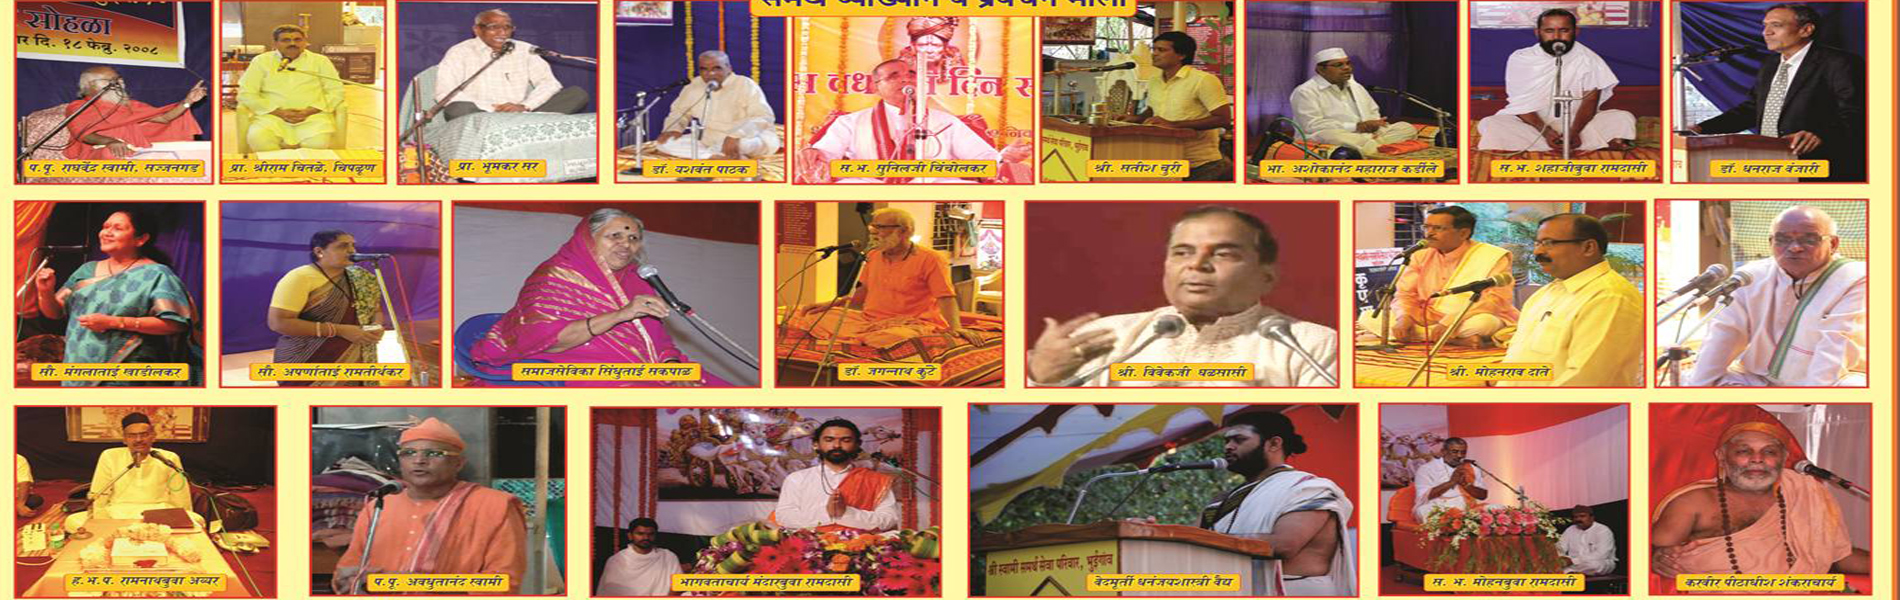 Swami Samarth Banner 3